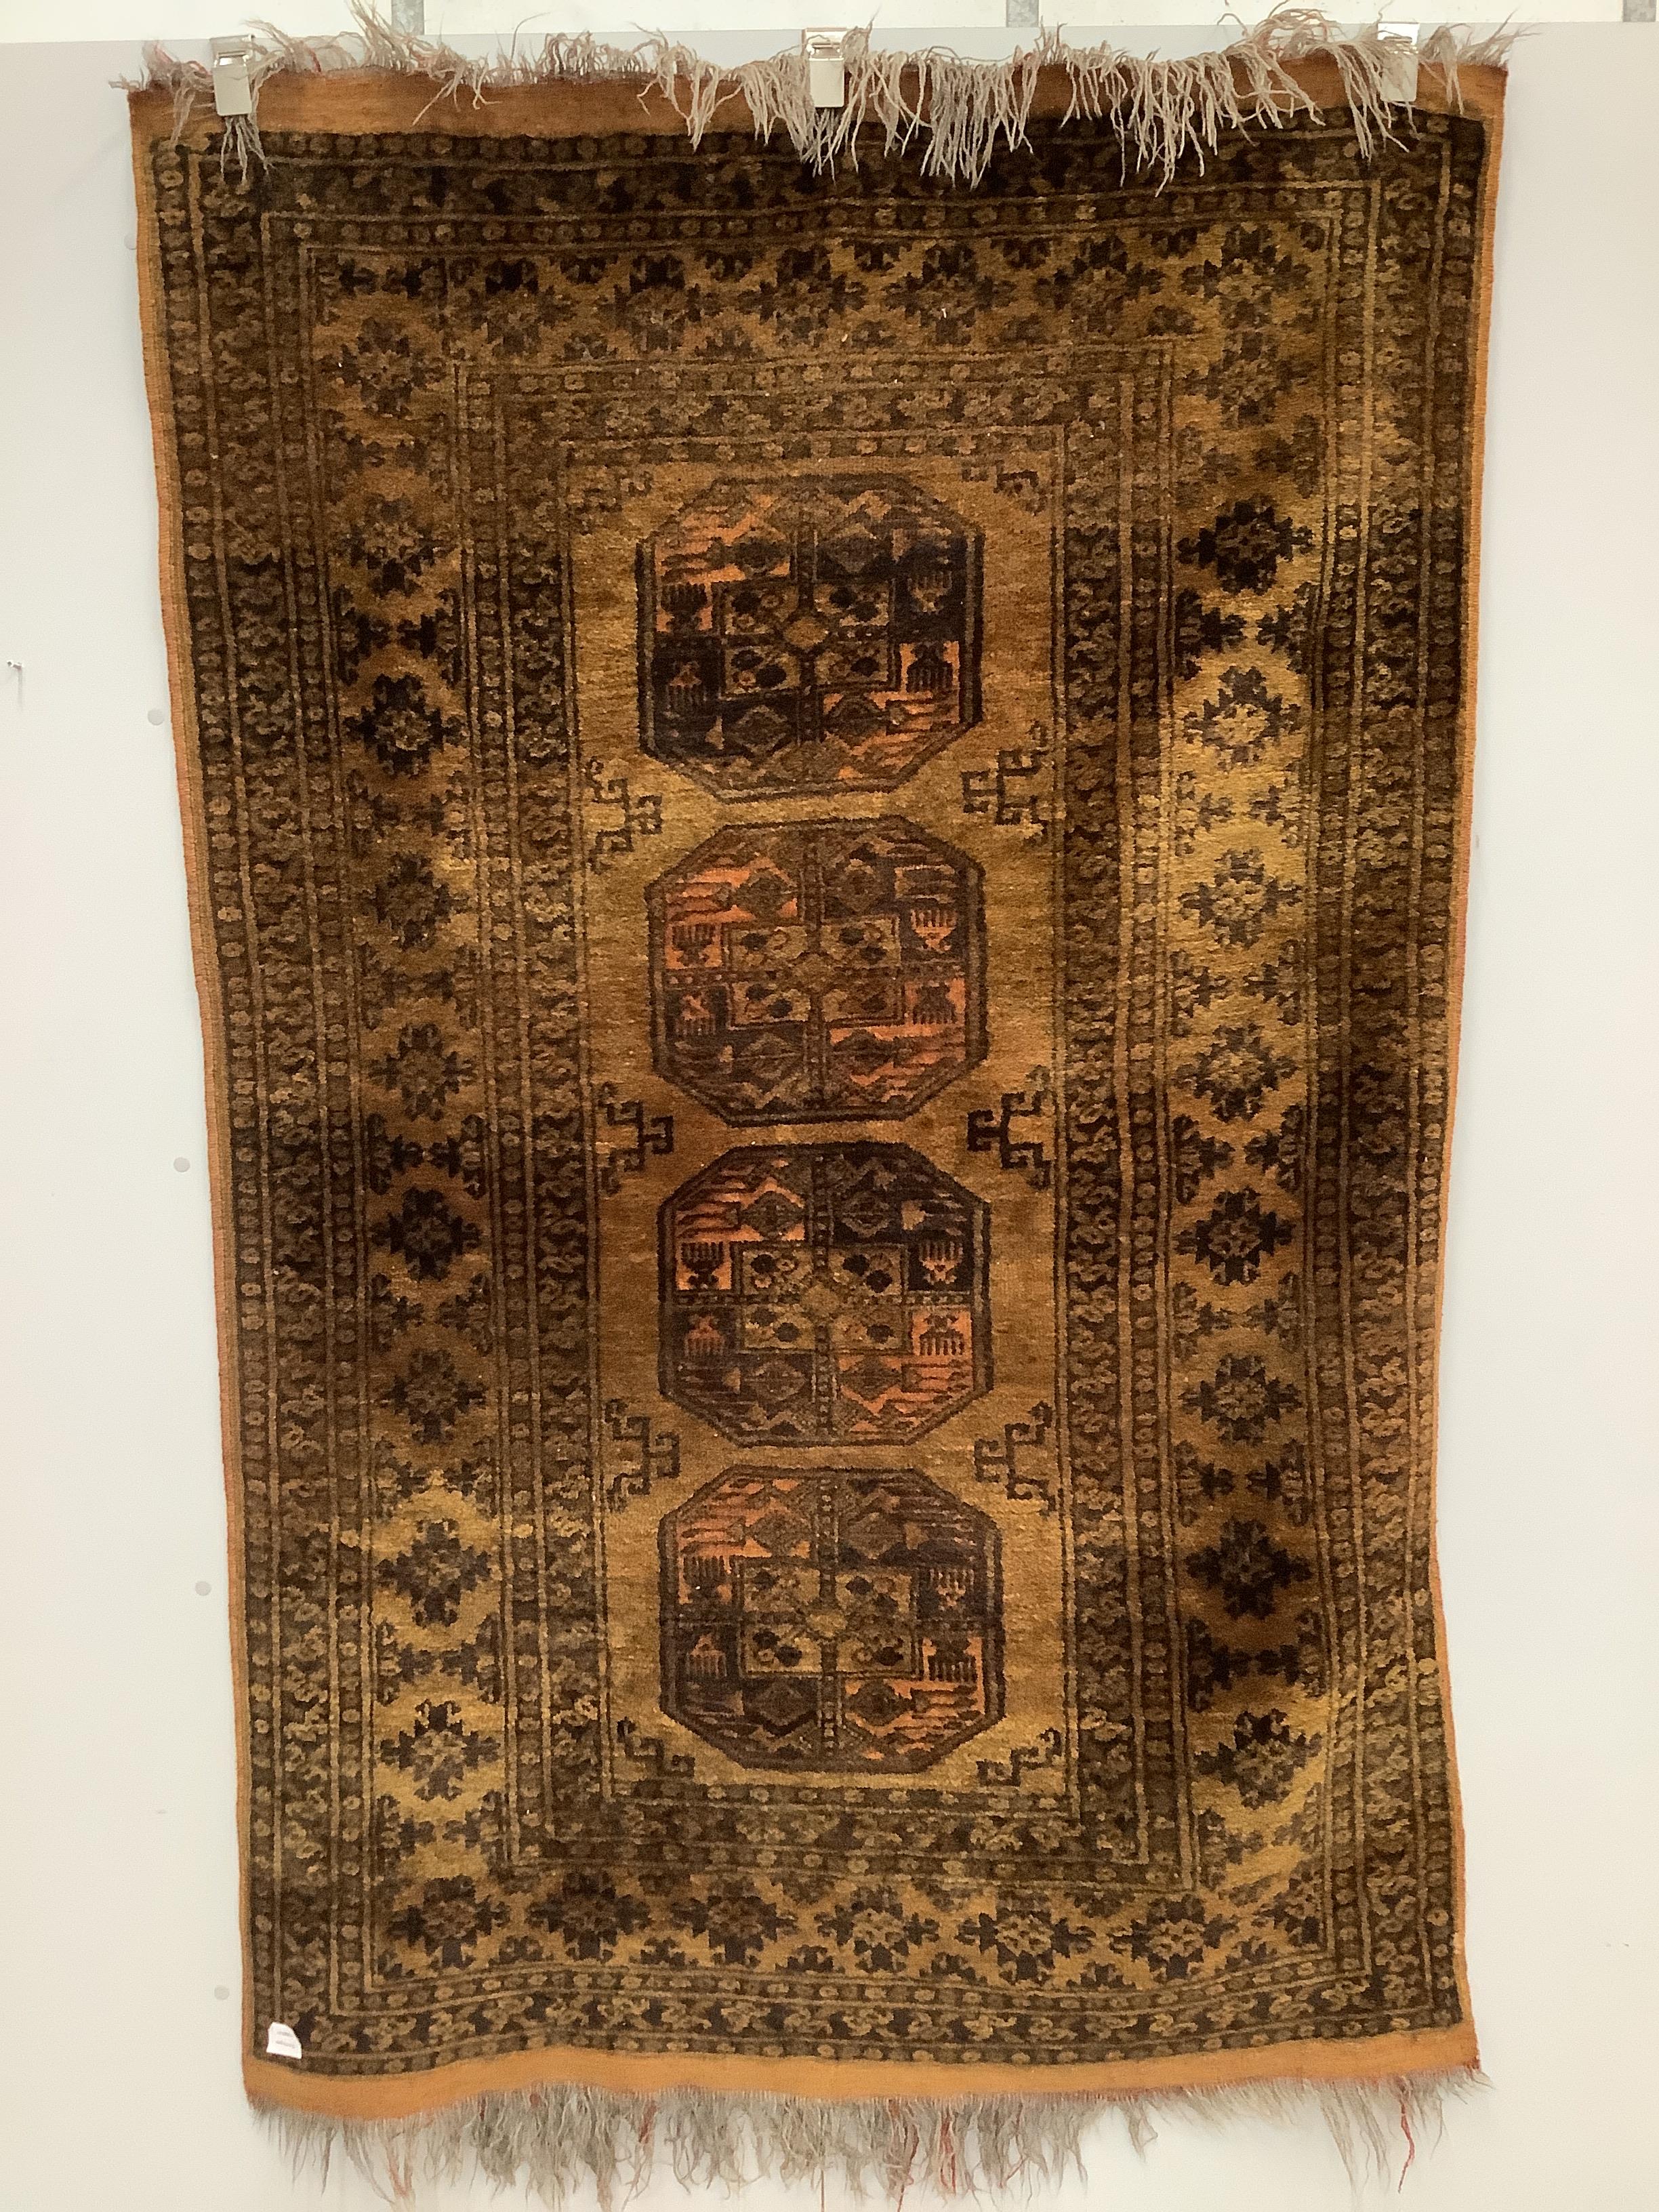 An Afghan gold ground rug, 196 x 125cm